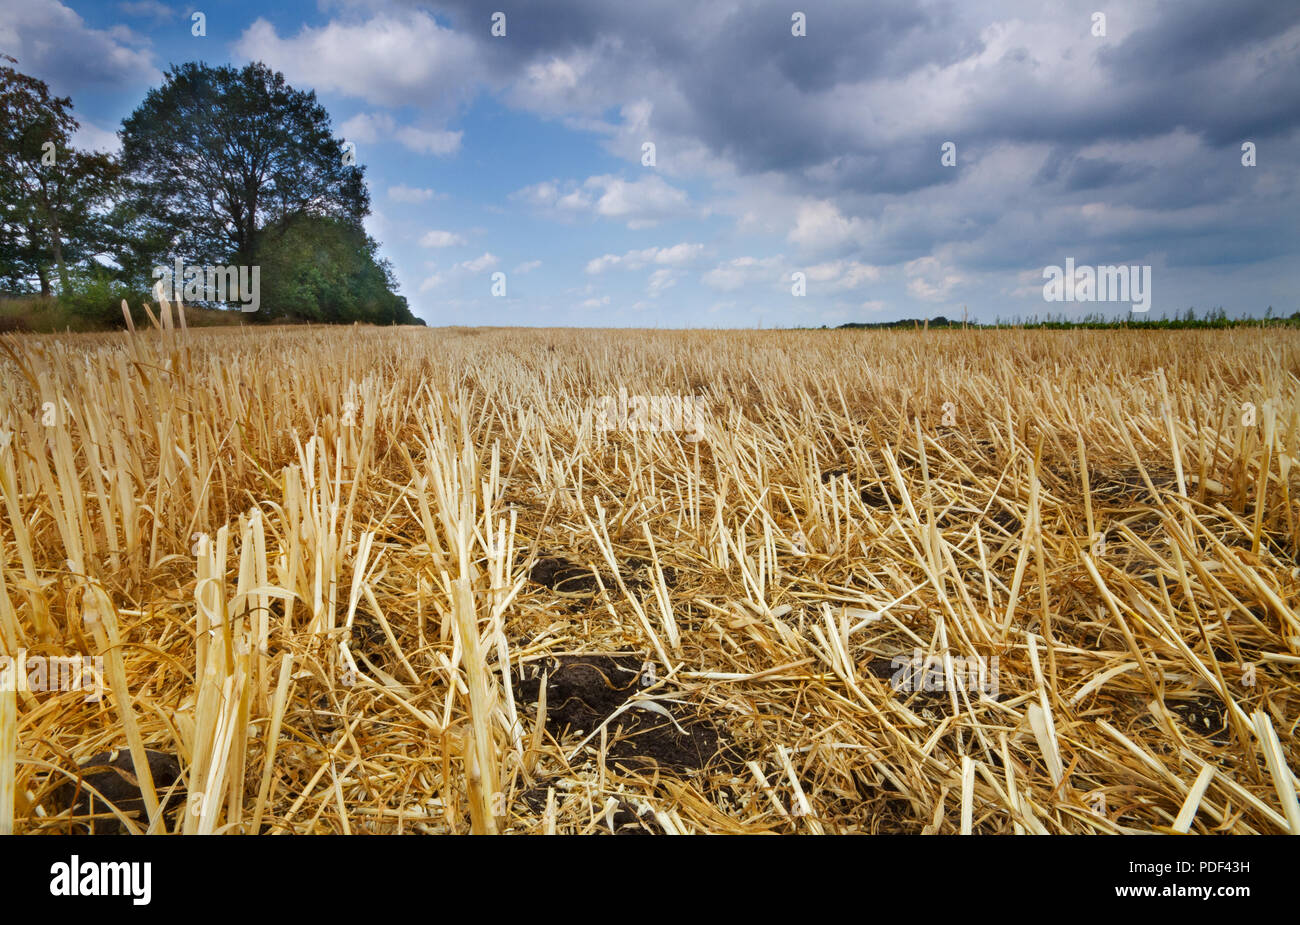 Paysage rural sous ciel bleu avec des nuages, les chaumes de maïs laissés sur le champ après la récolte du grain Banque D'Images